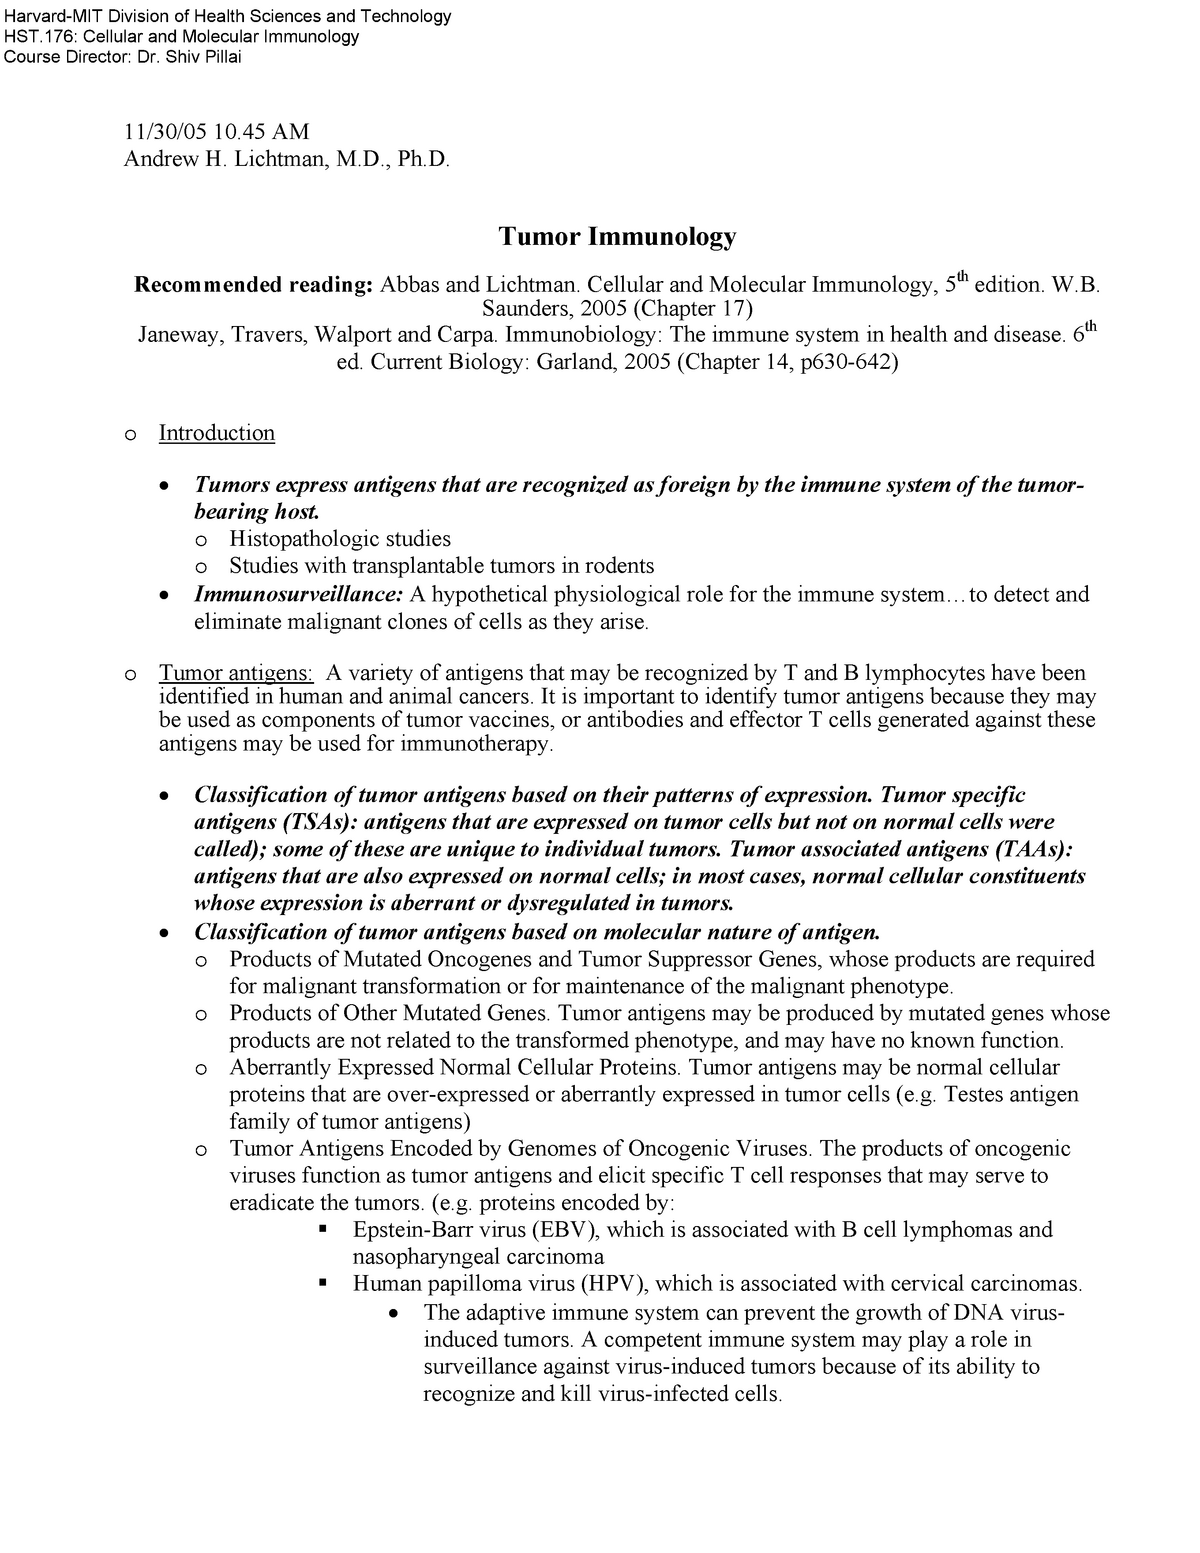 basic immunology abbas lichtman pillai 5th edition pdf